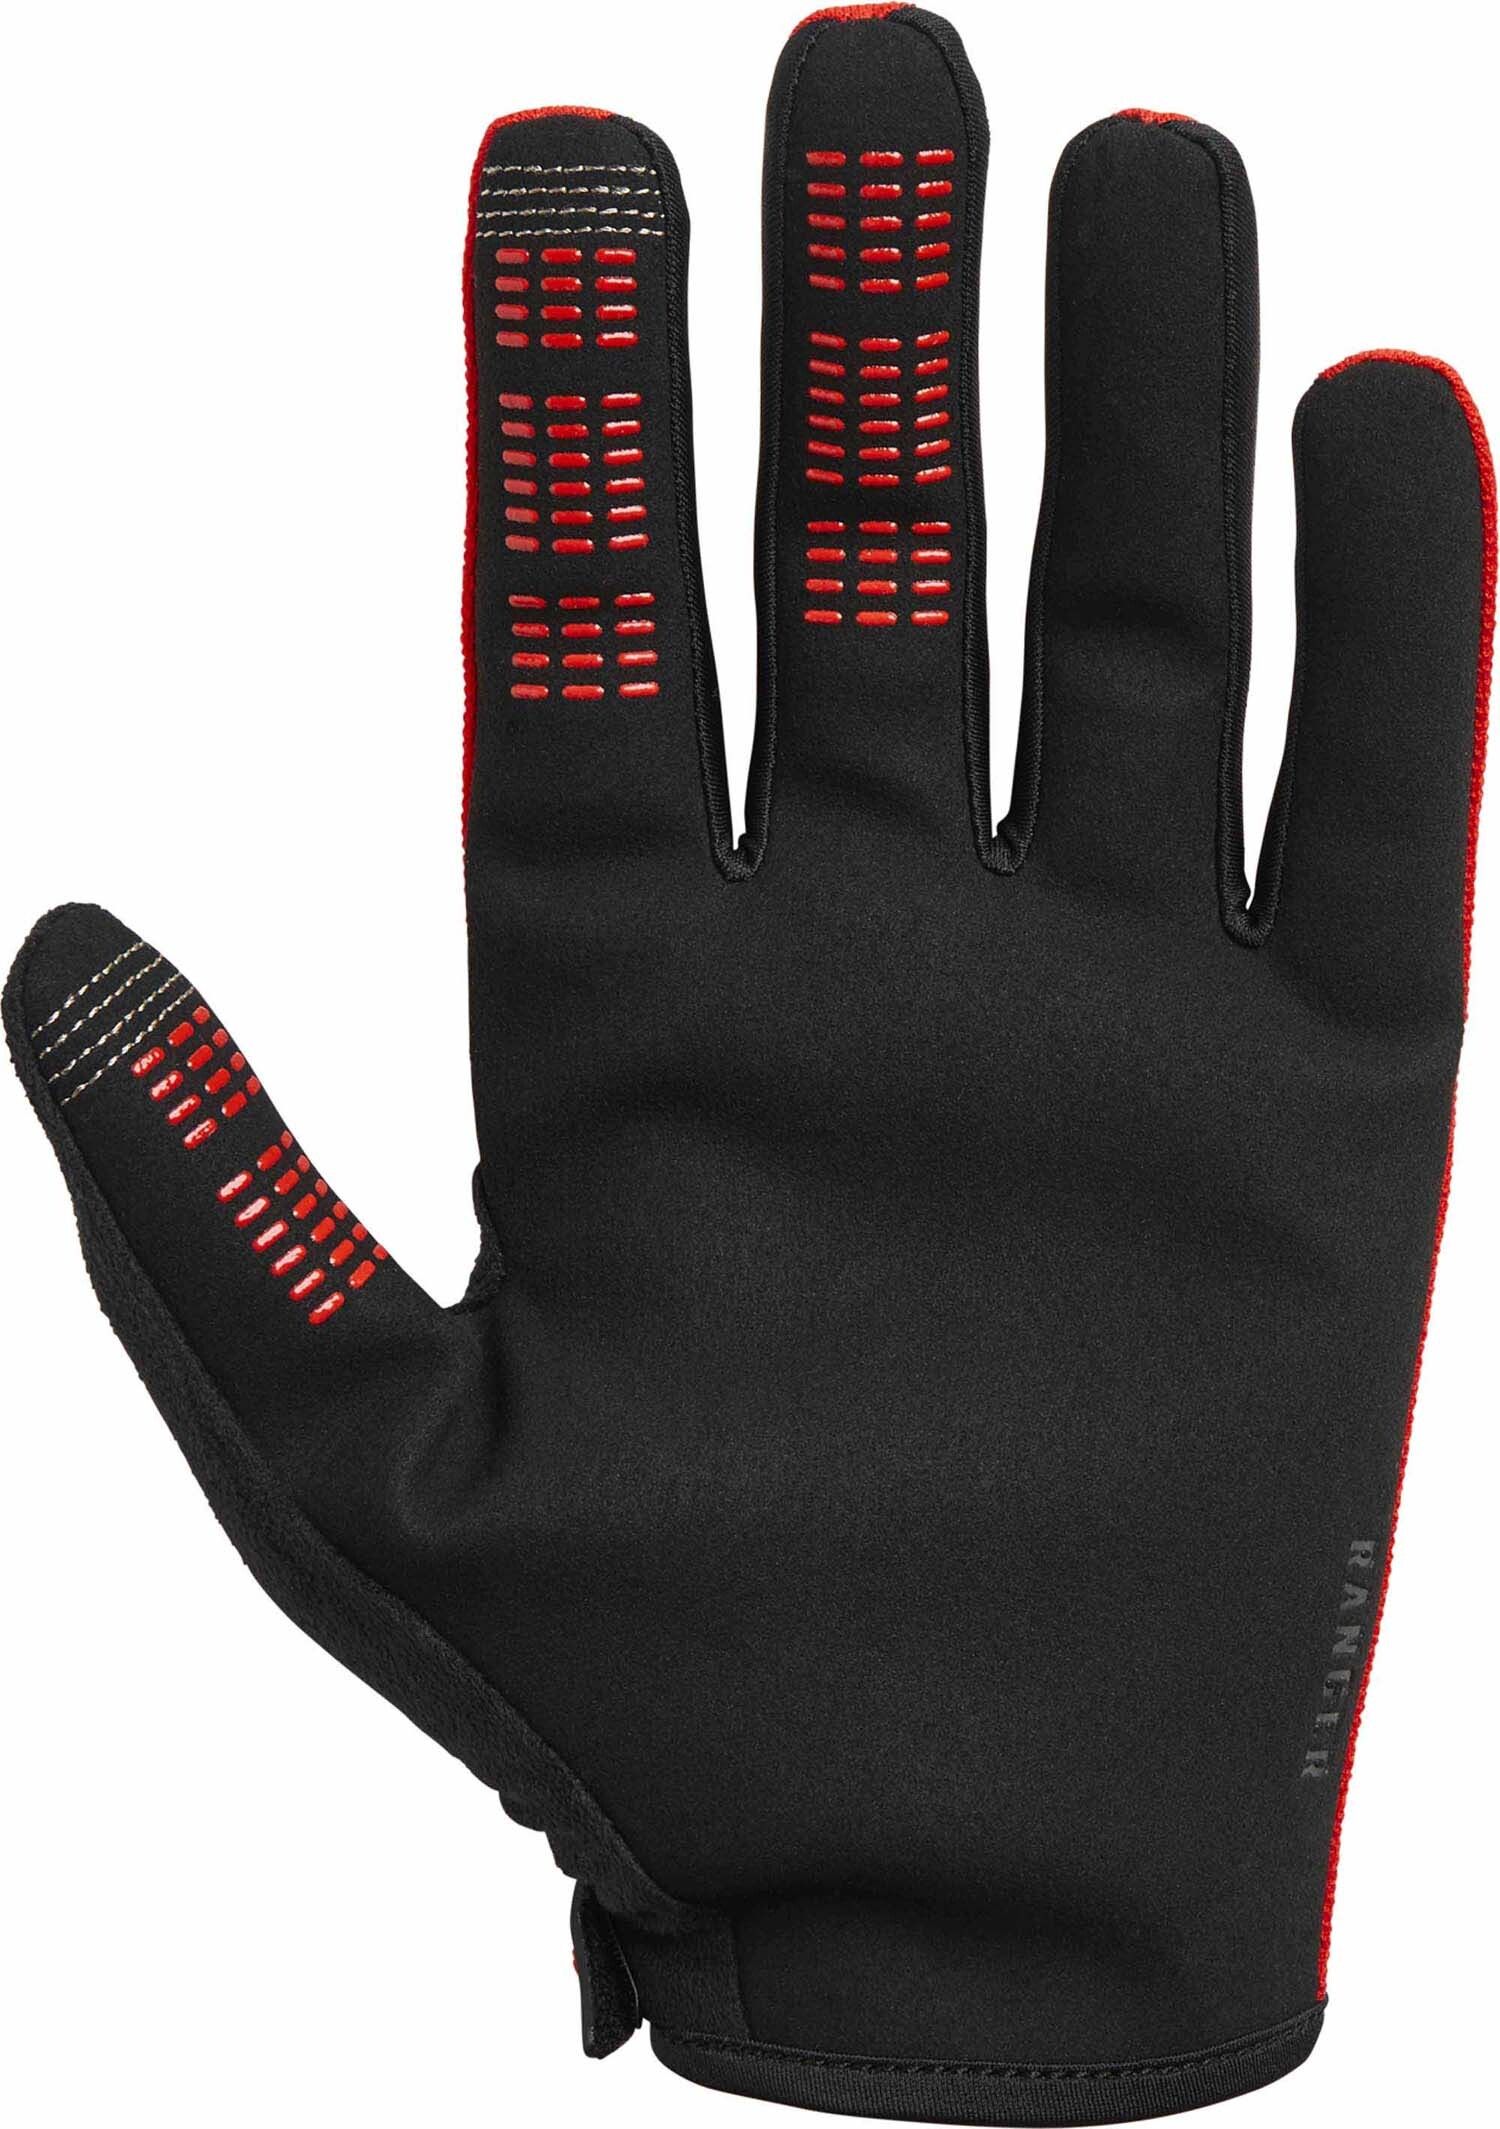 Yth Ranger Glove